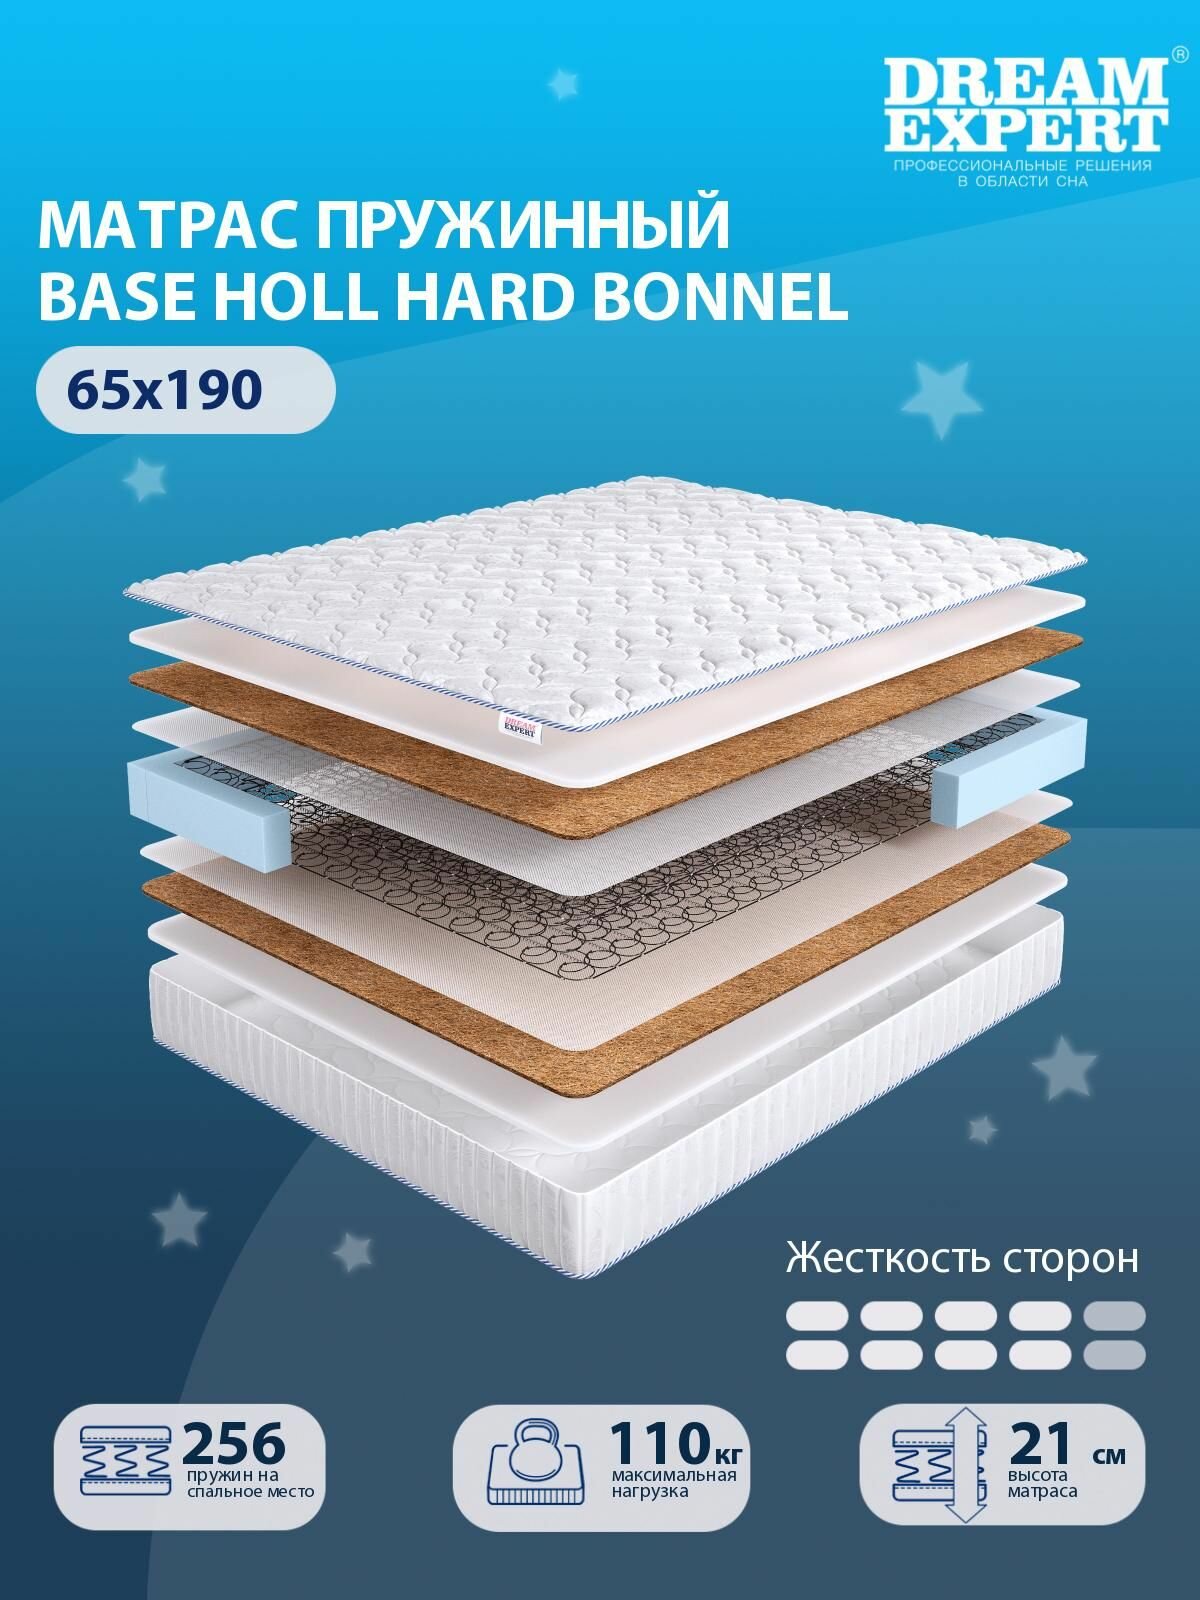 Матрас DreamExpert Base Holl Hard Bonnel выше средней жесткости, детский, зависимый пружинный блок, на кровать 65x190